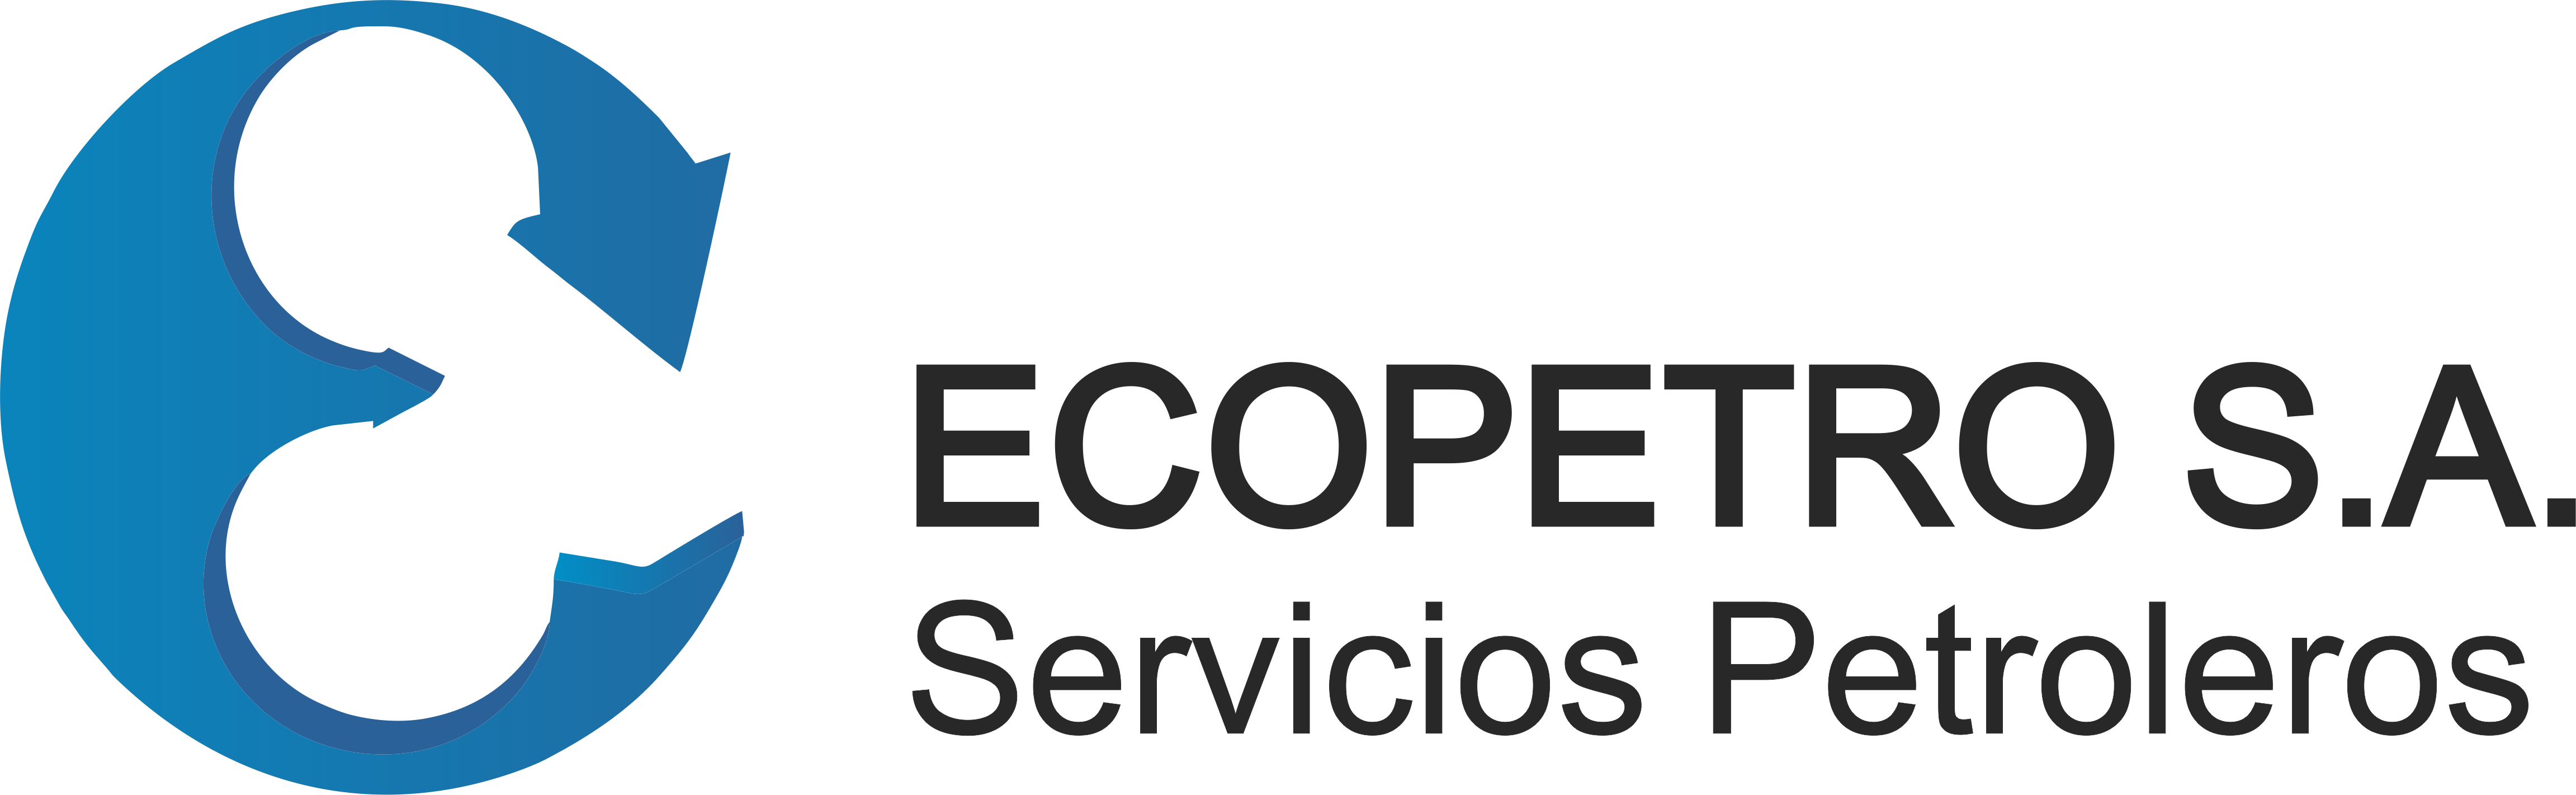 Logo Ecopetro